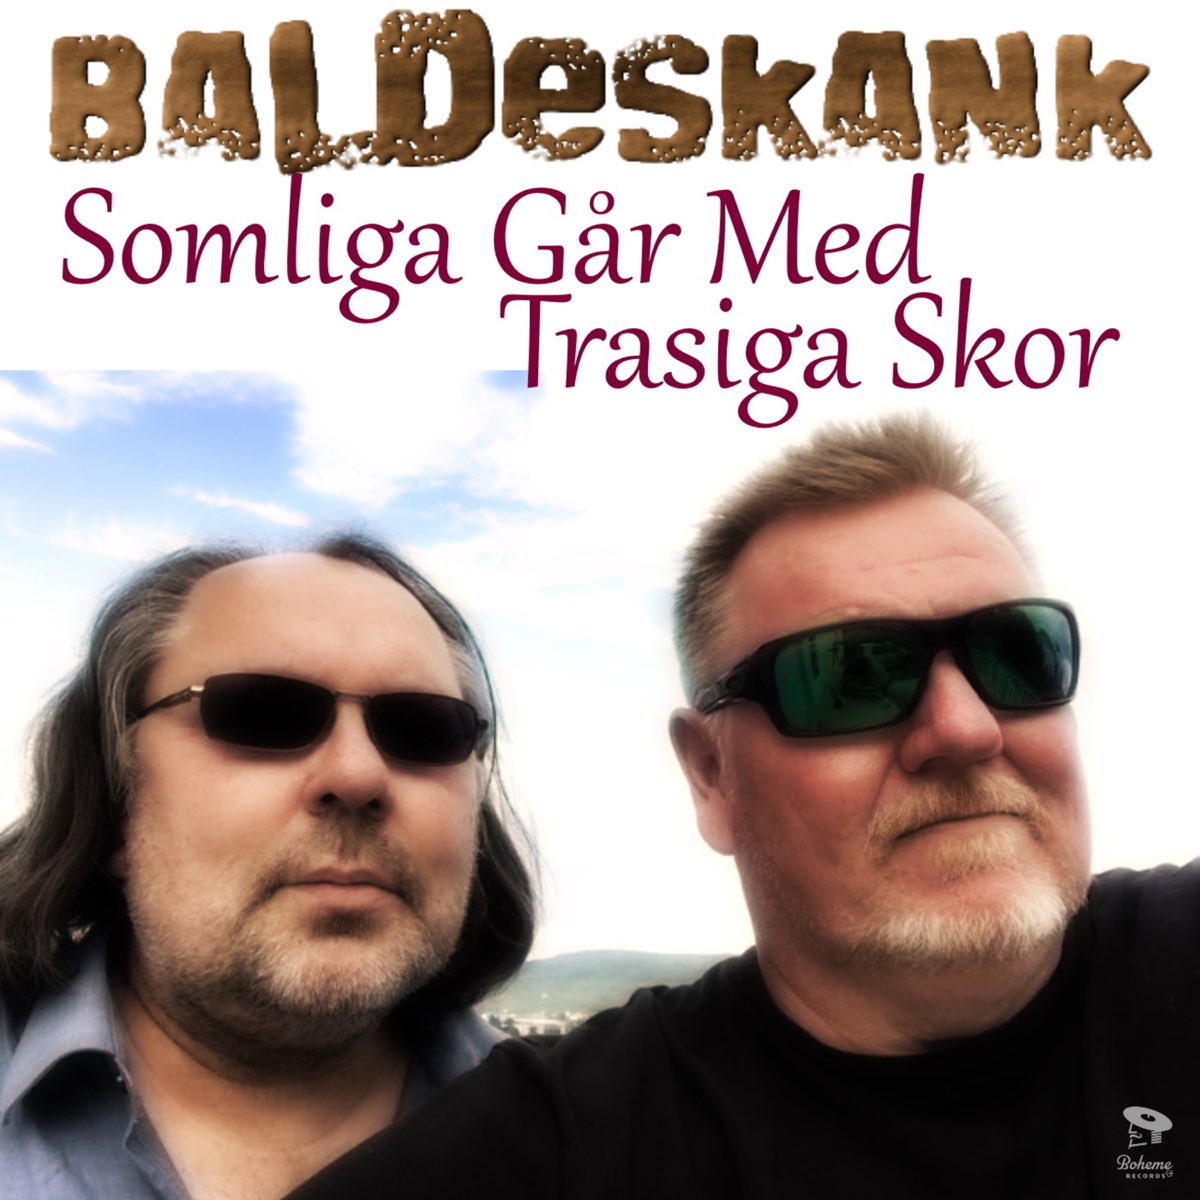 Somliga Går med Trasiga Skor - Single - Album by Baldeskank - Apple Music